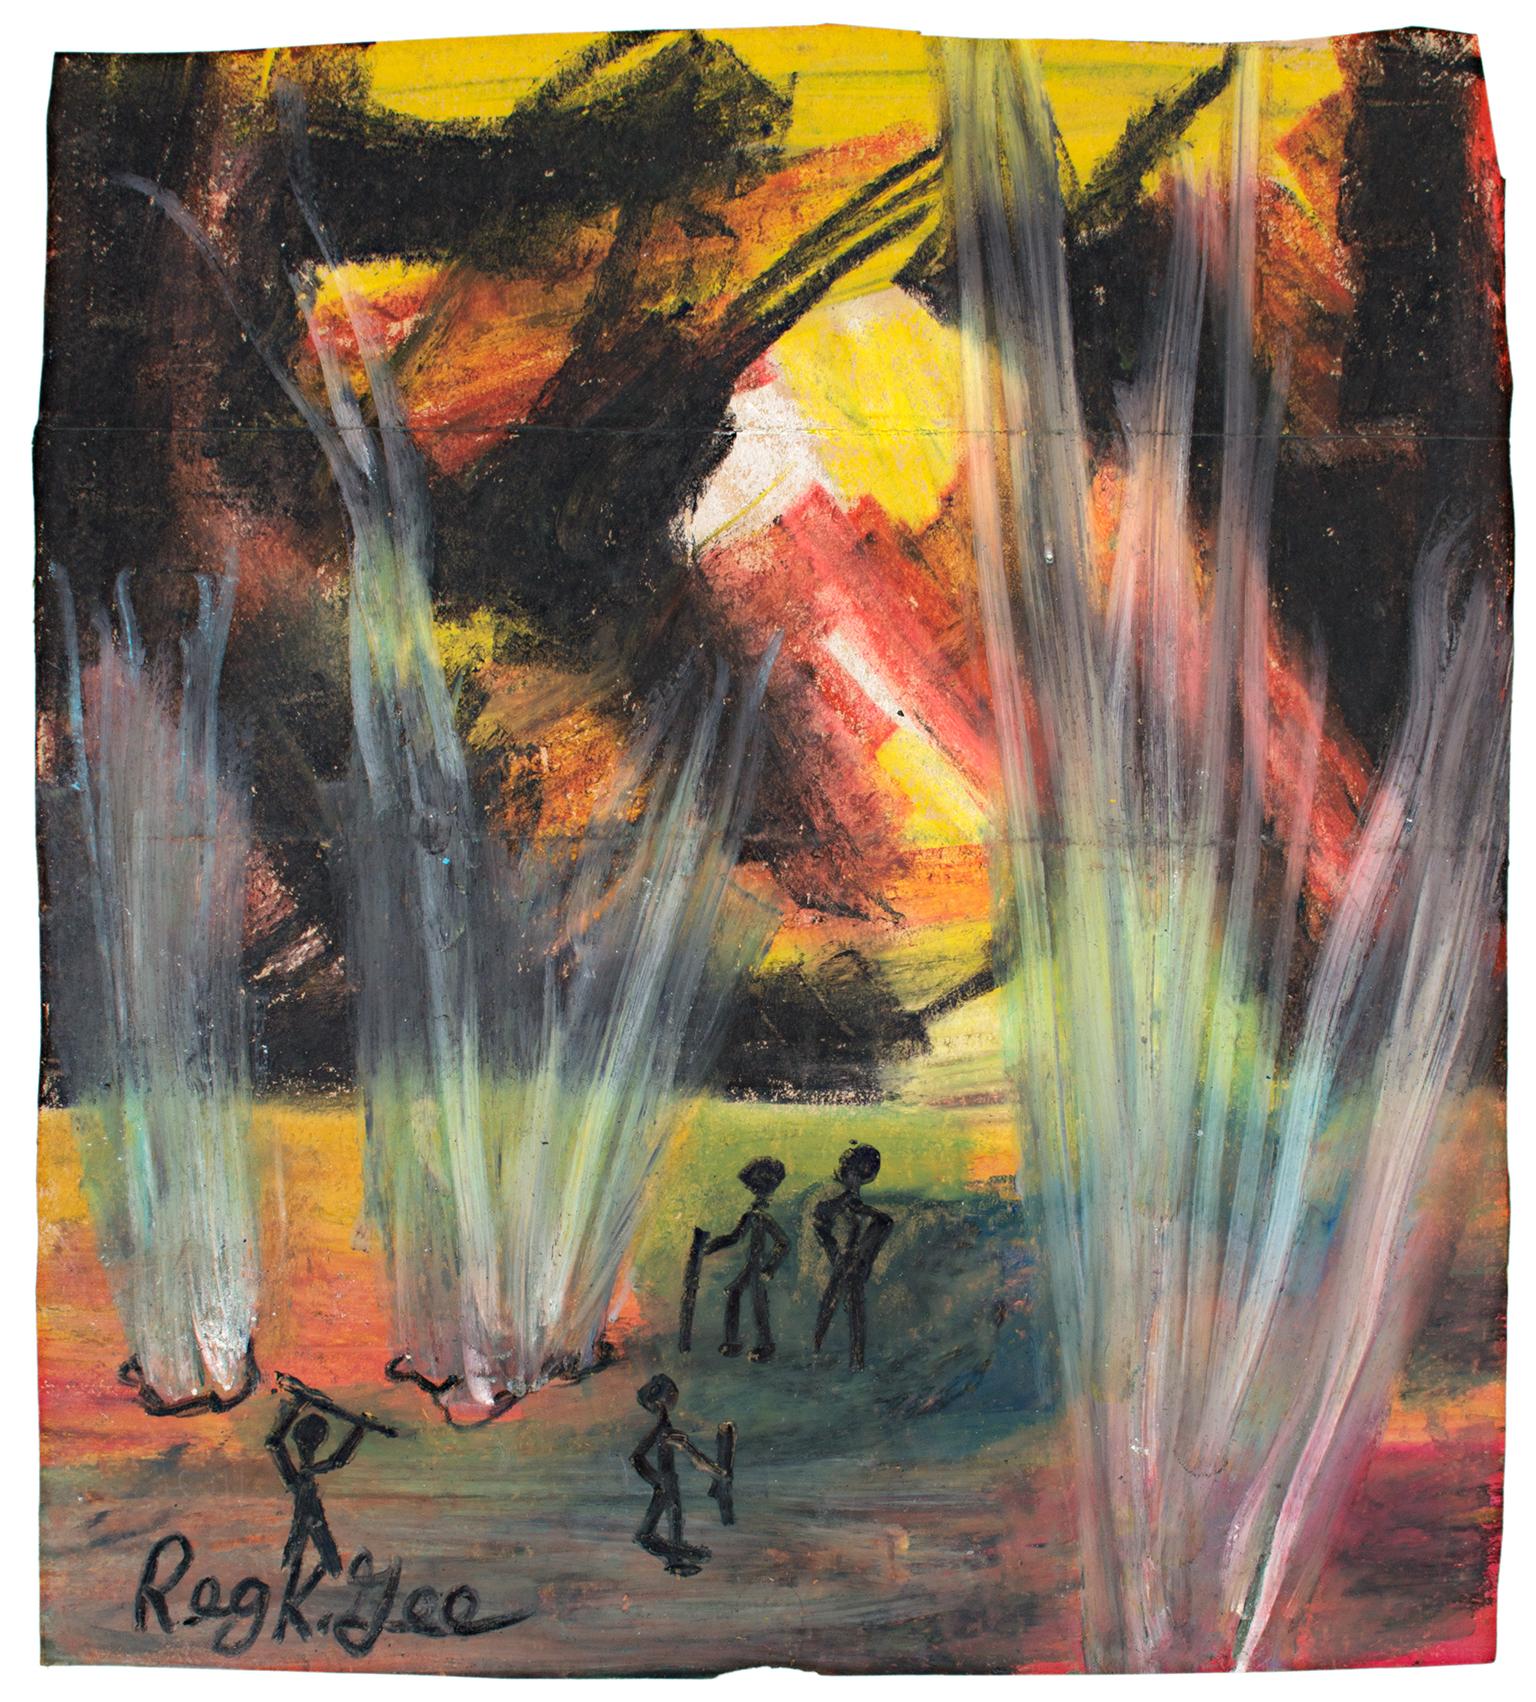 "The Light from Beneath" est un pastel à l'huile original réalisé sur un sac d'épicerie par Reginald K. Gee. L'artiste a signé l'œuvre en bas à gauche. Cette pièce présente de multiples figures simplifiées dans un paysage sombre où la lumière